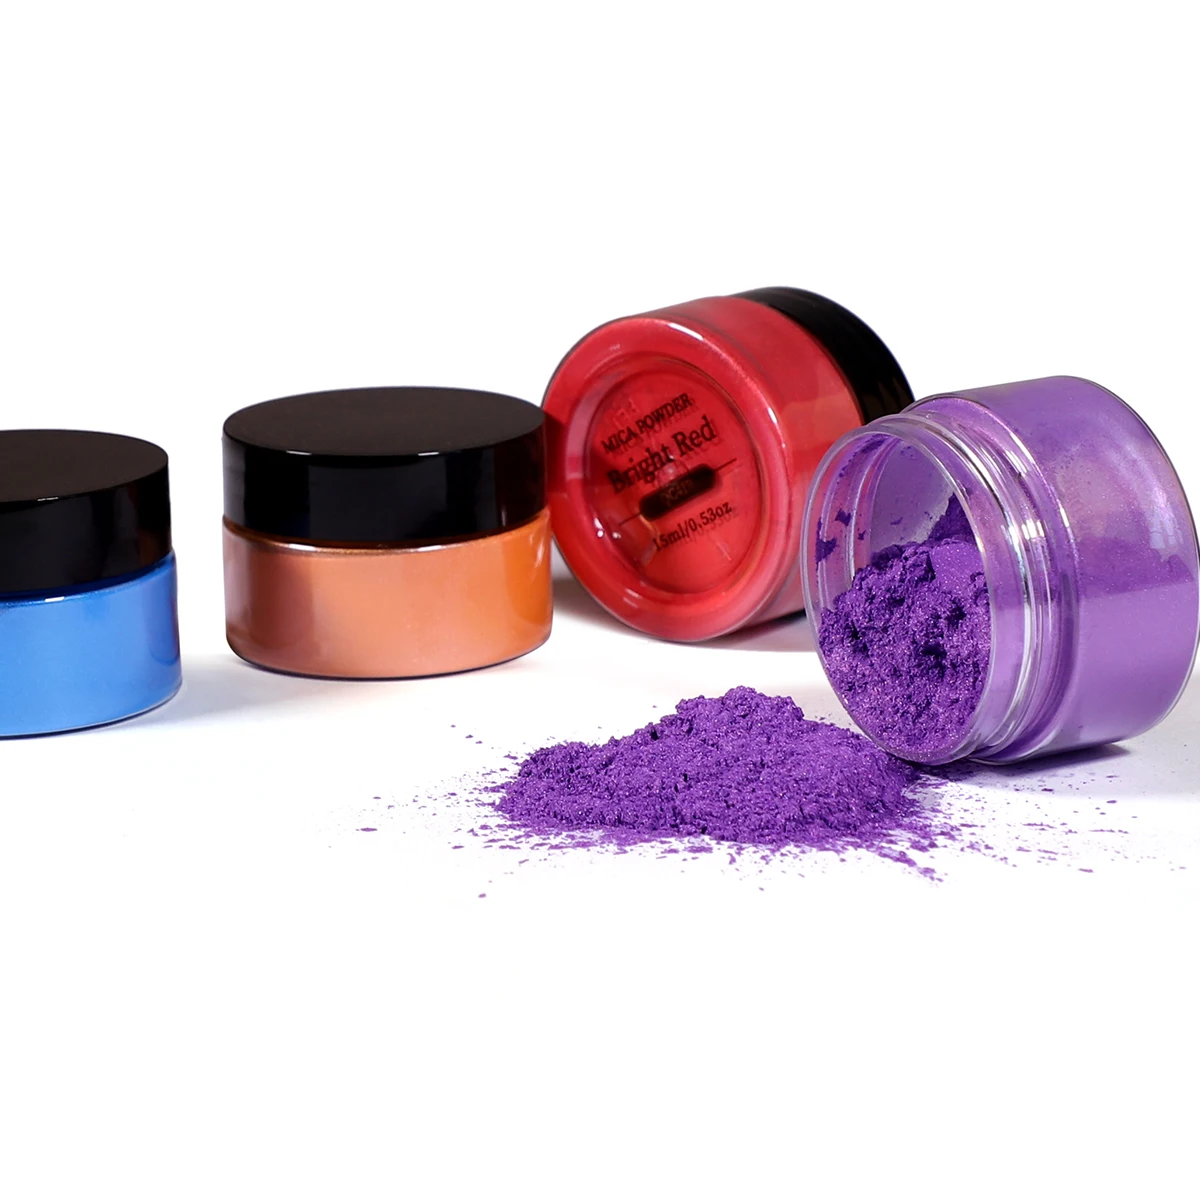 50/100g Epoxy Resin Dye Pearl Mica Powder , Soap Dye Hand , Soap Making  Supplies , Eyeshadow and Lips Makeup Dye DIY Pigment